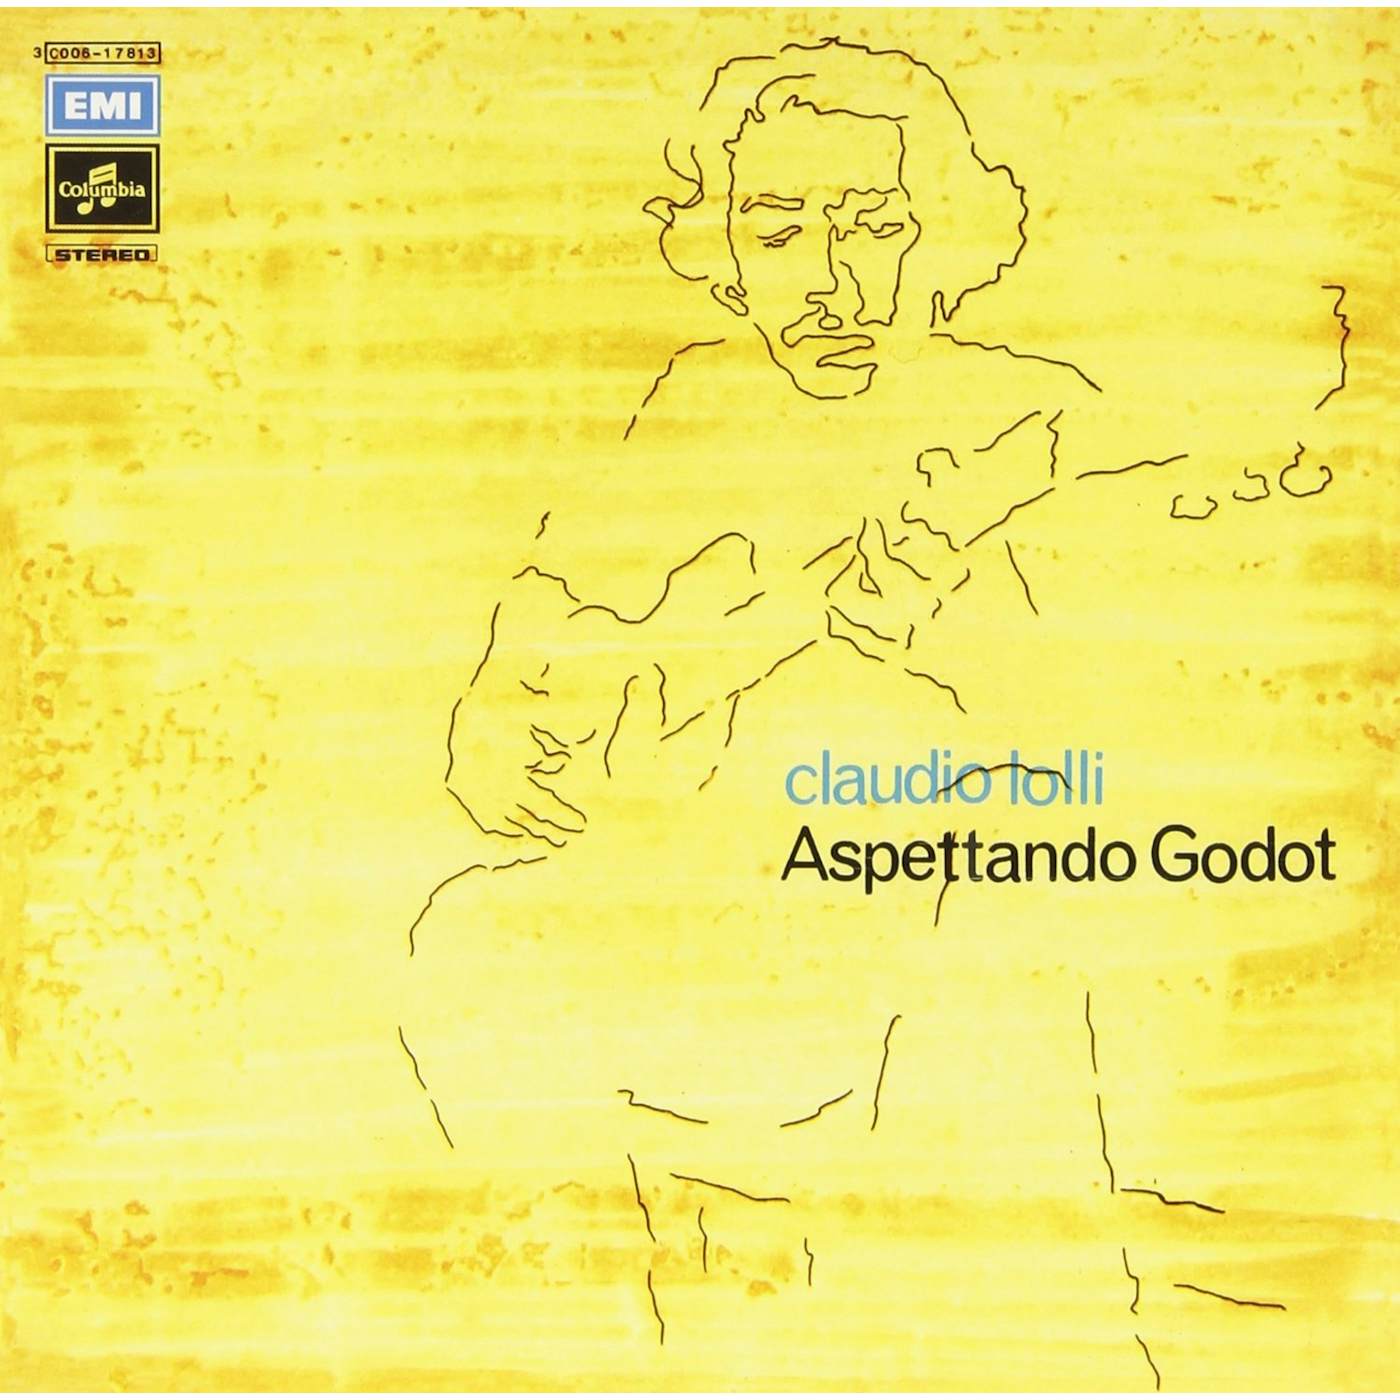 Claudio Lolli ASPETTANDO GODOT / MICHEL Vinyl Record